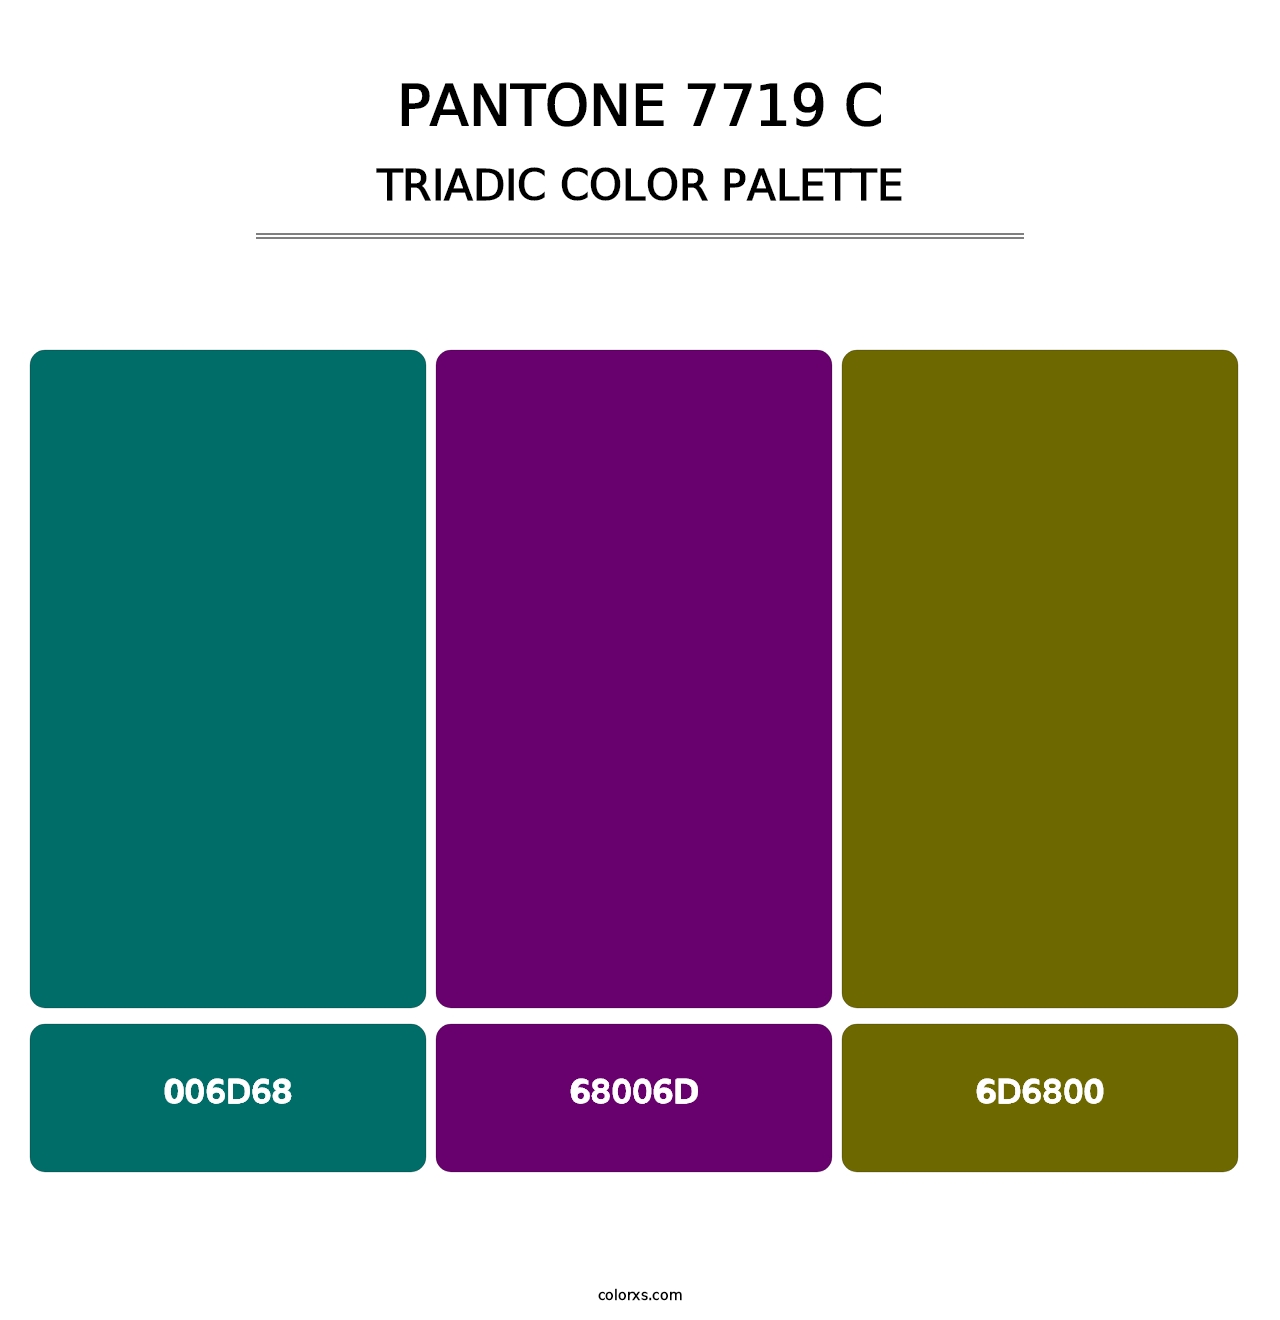 PANTONE 7719 C - Triadic Color Palette